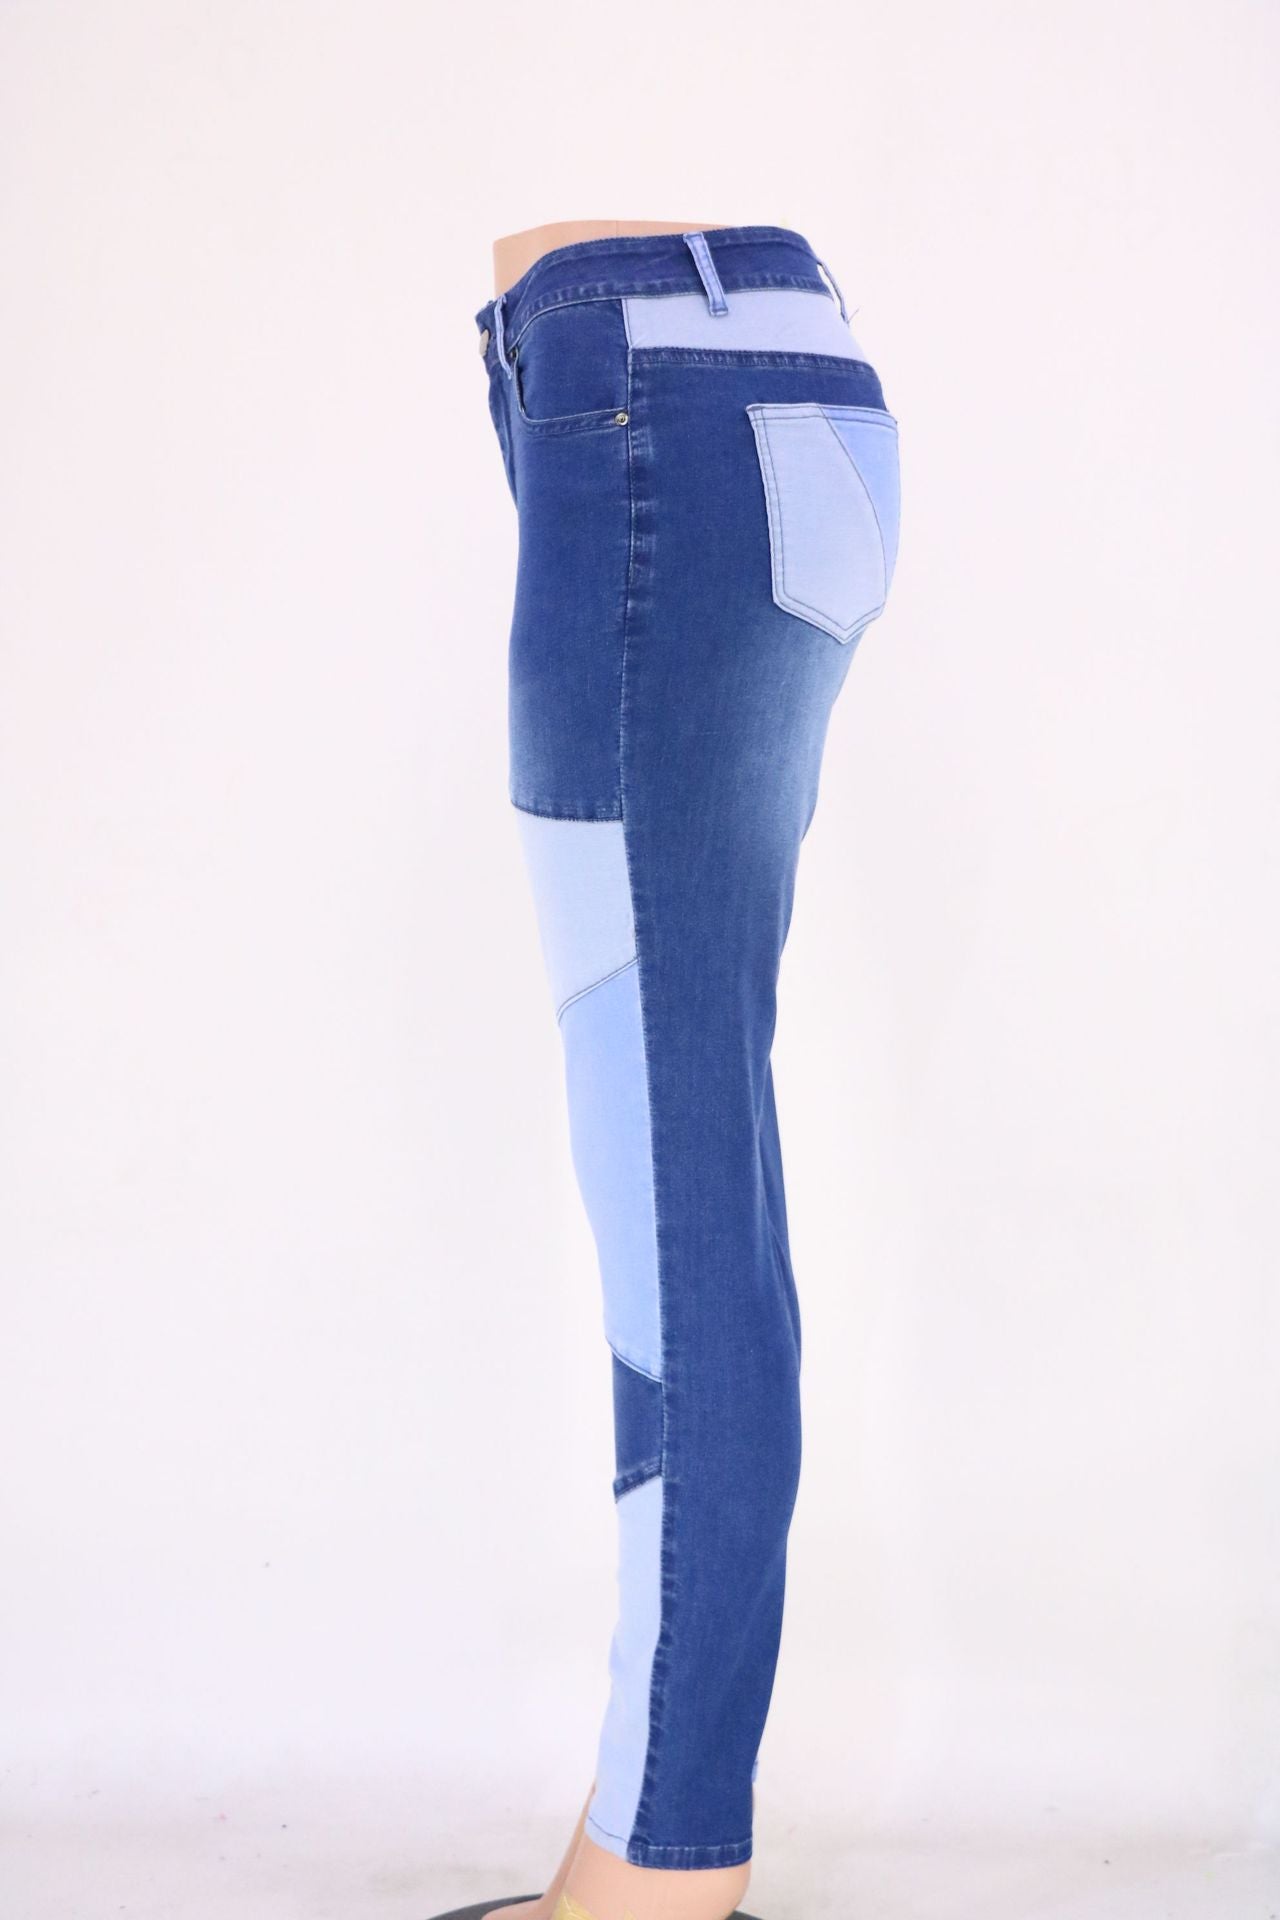 Blau-schwarz genähte Street-Hipster-Hose aus gewaschenem Baumwolldenim mit hoher Taille